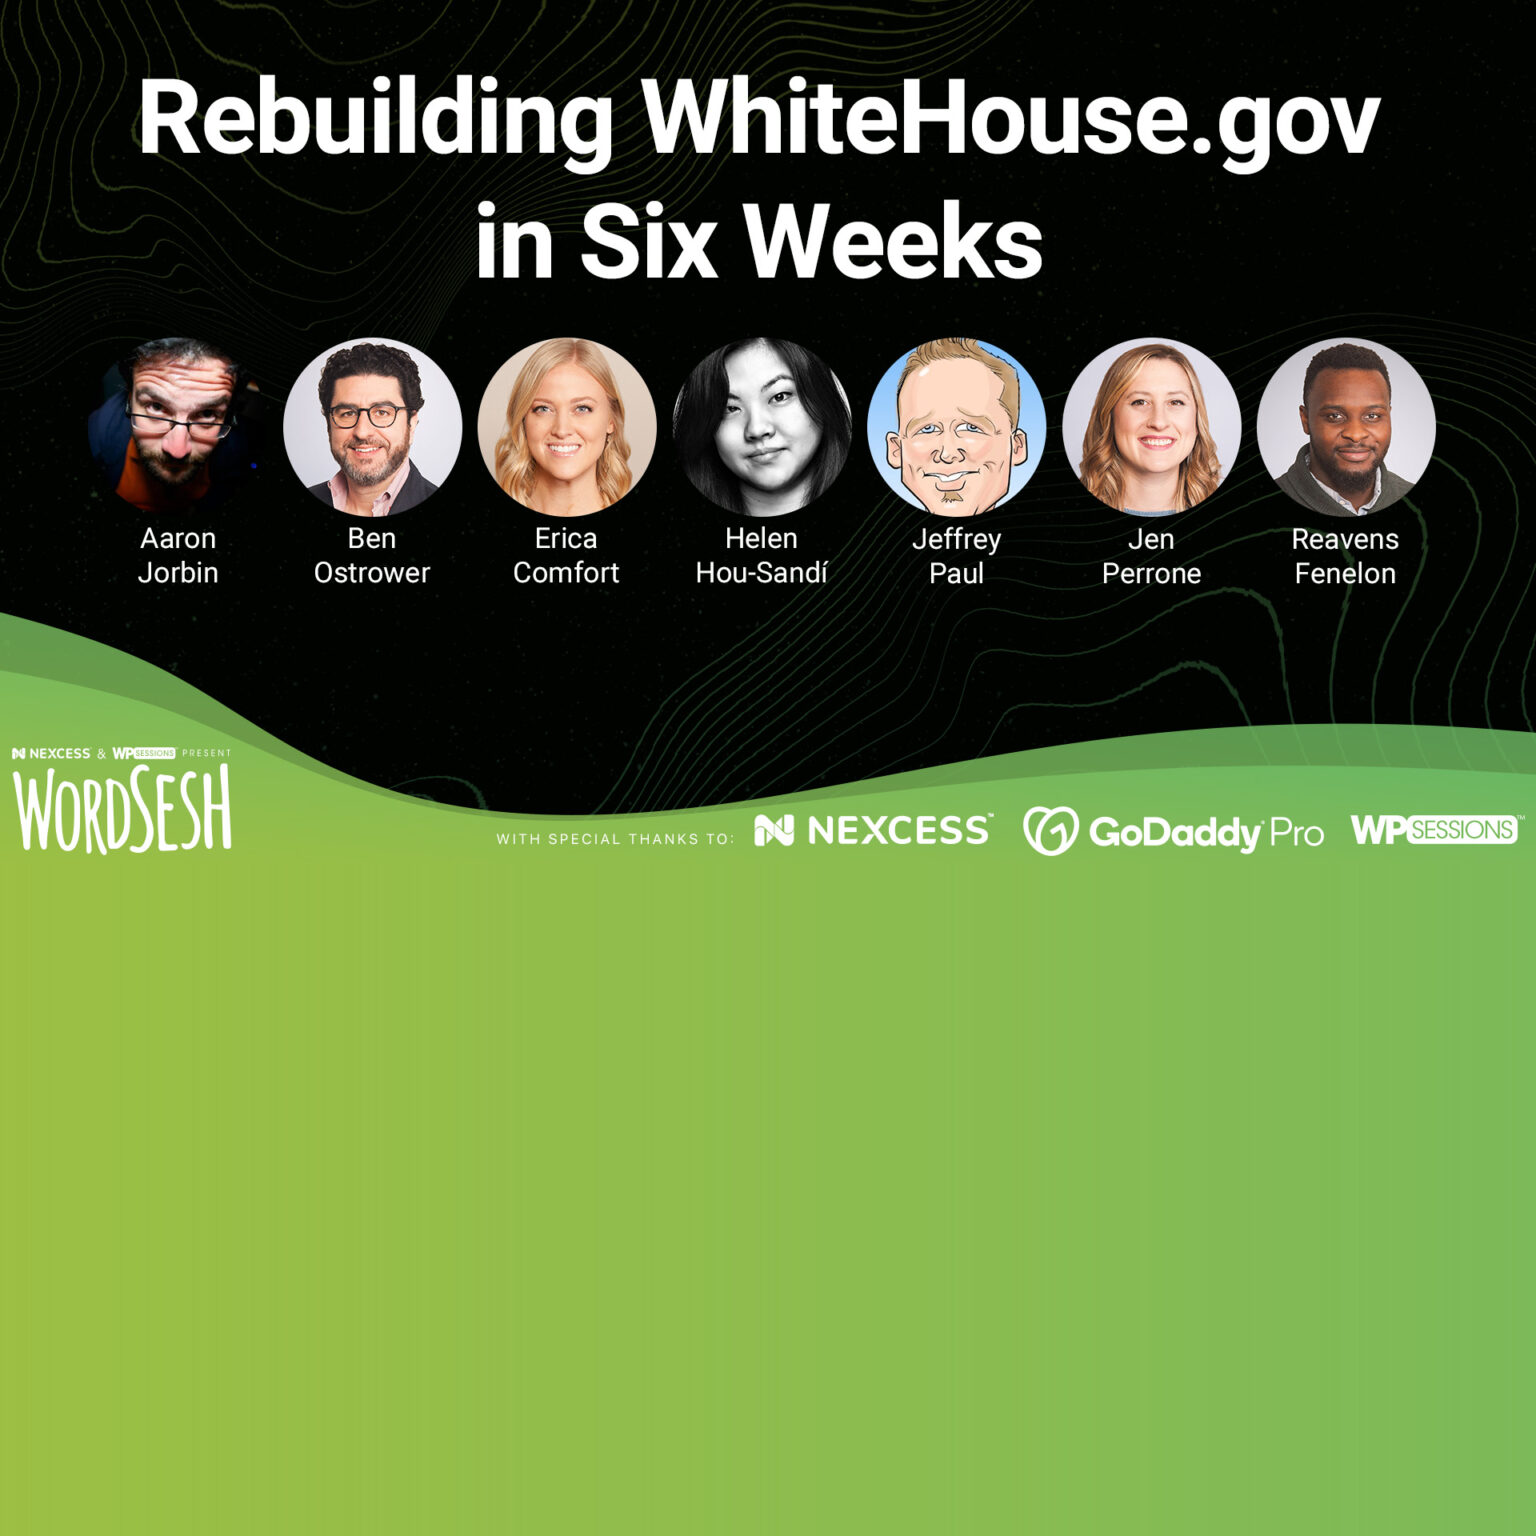 WhiteHouse.gov Team